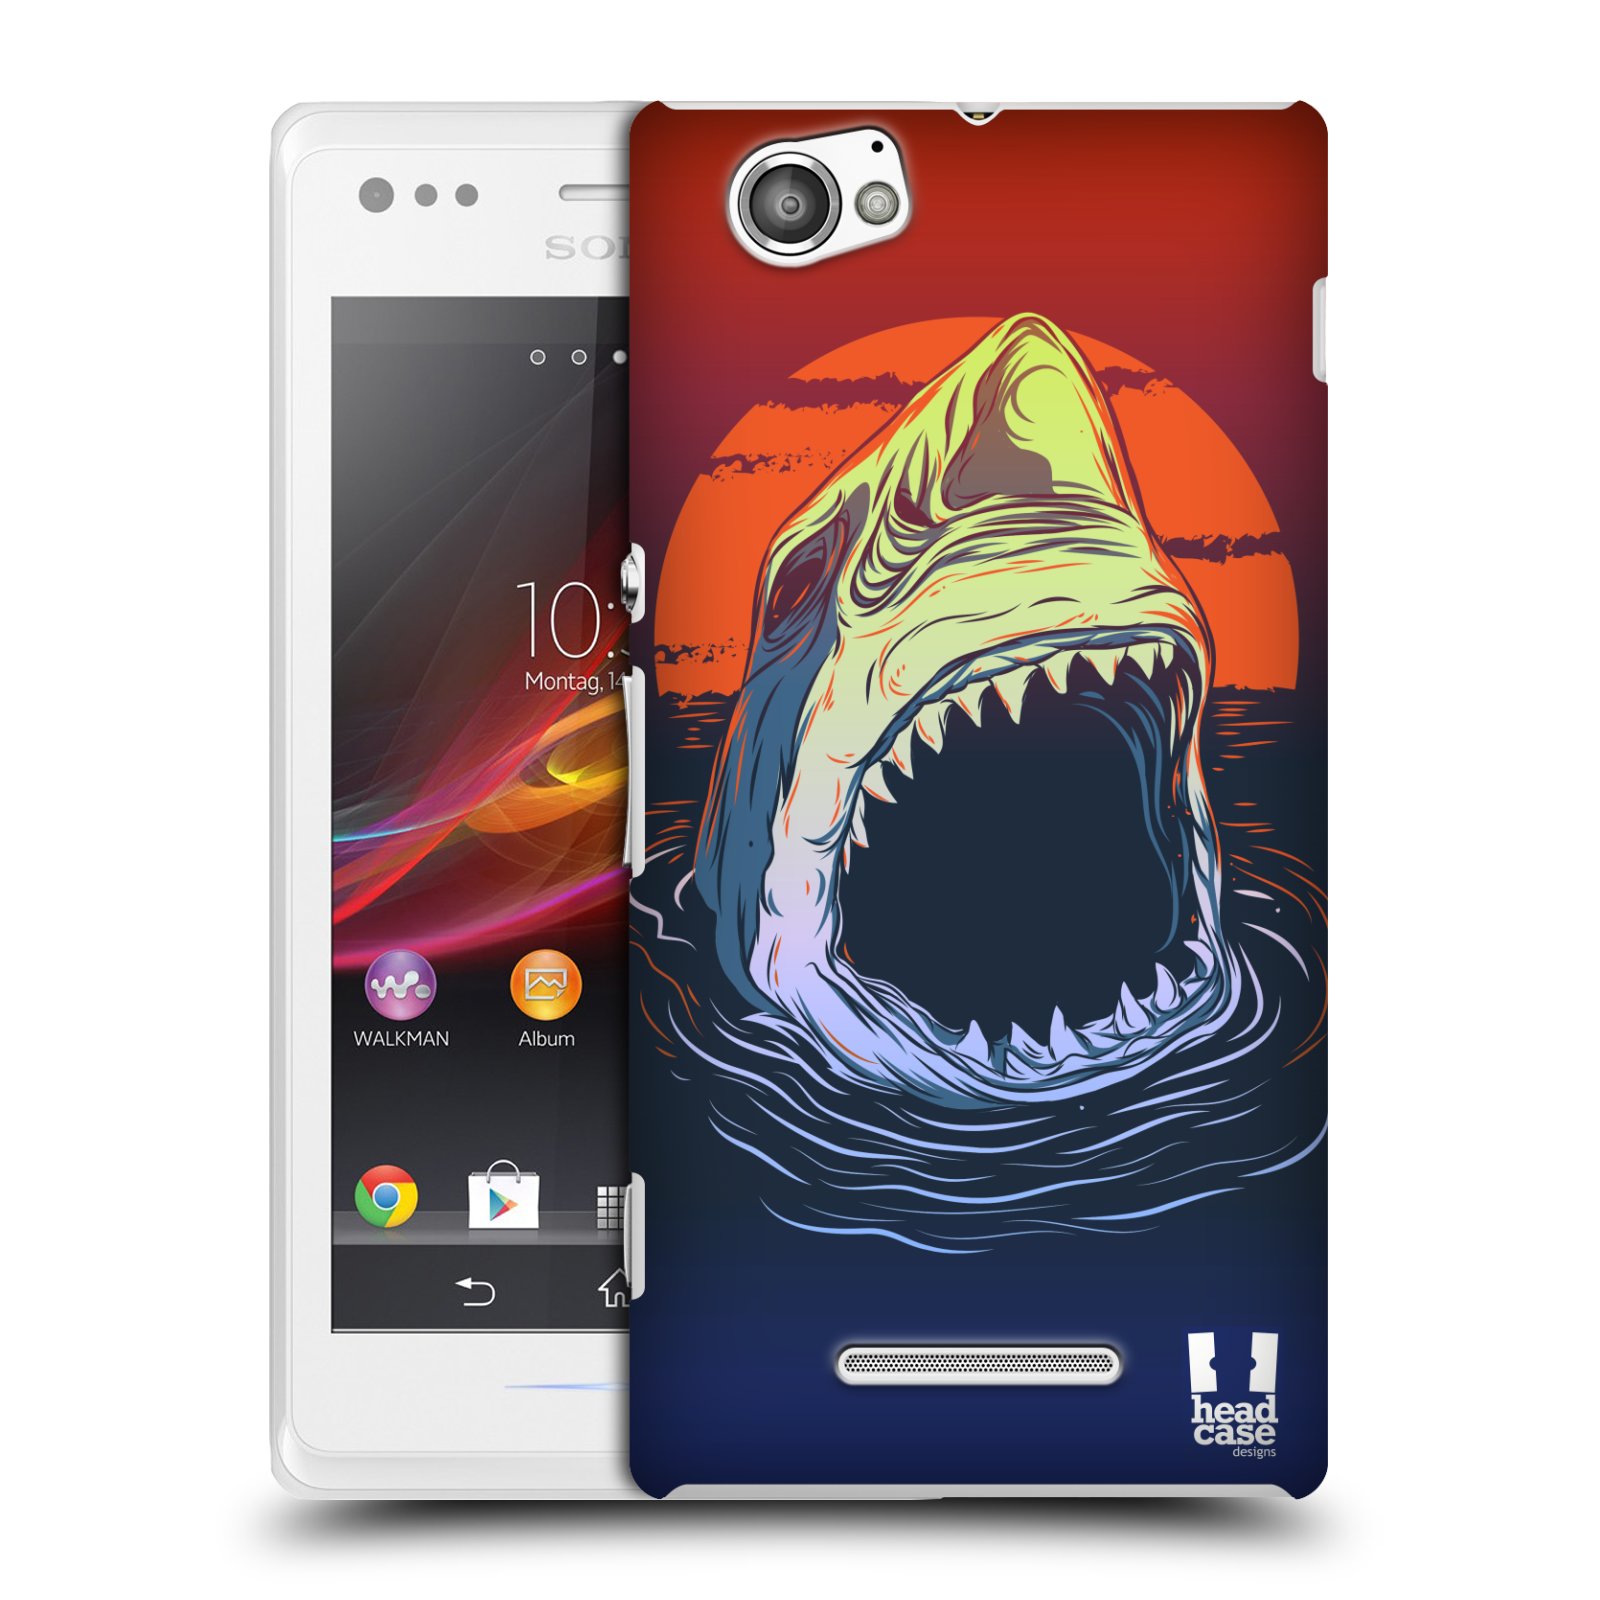 HEAD CASE plastový obal na mobil Sony Xperia M vzor mořská monstra žralok